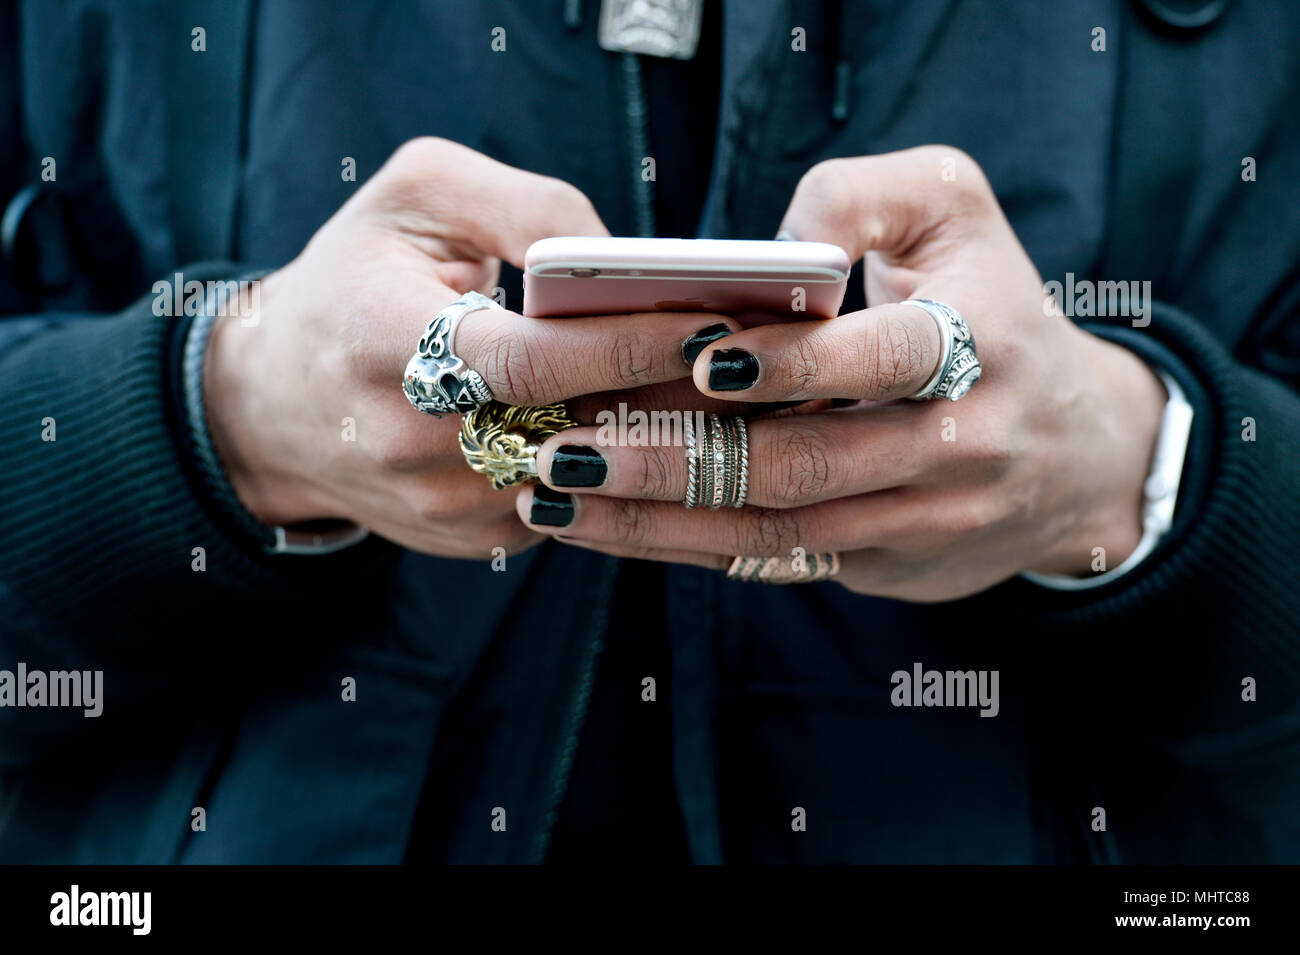 Un hombre con las manos llenas de anillos manipulando un smartphone - París  - Francia Fotografía de stock - Alamy